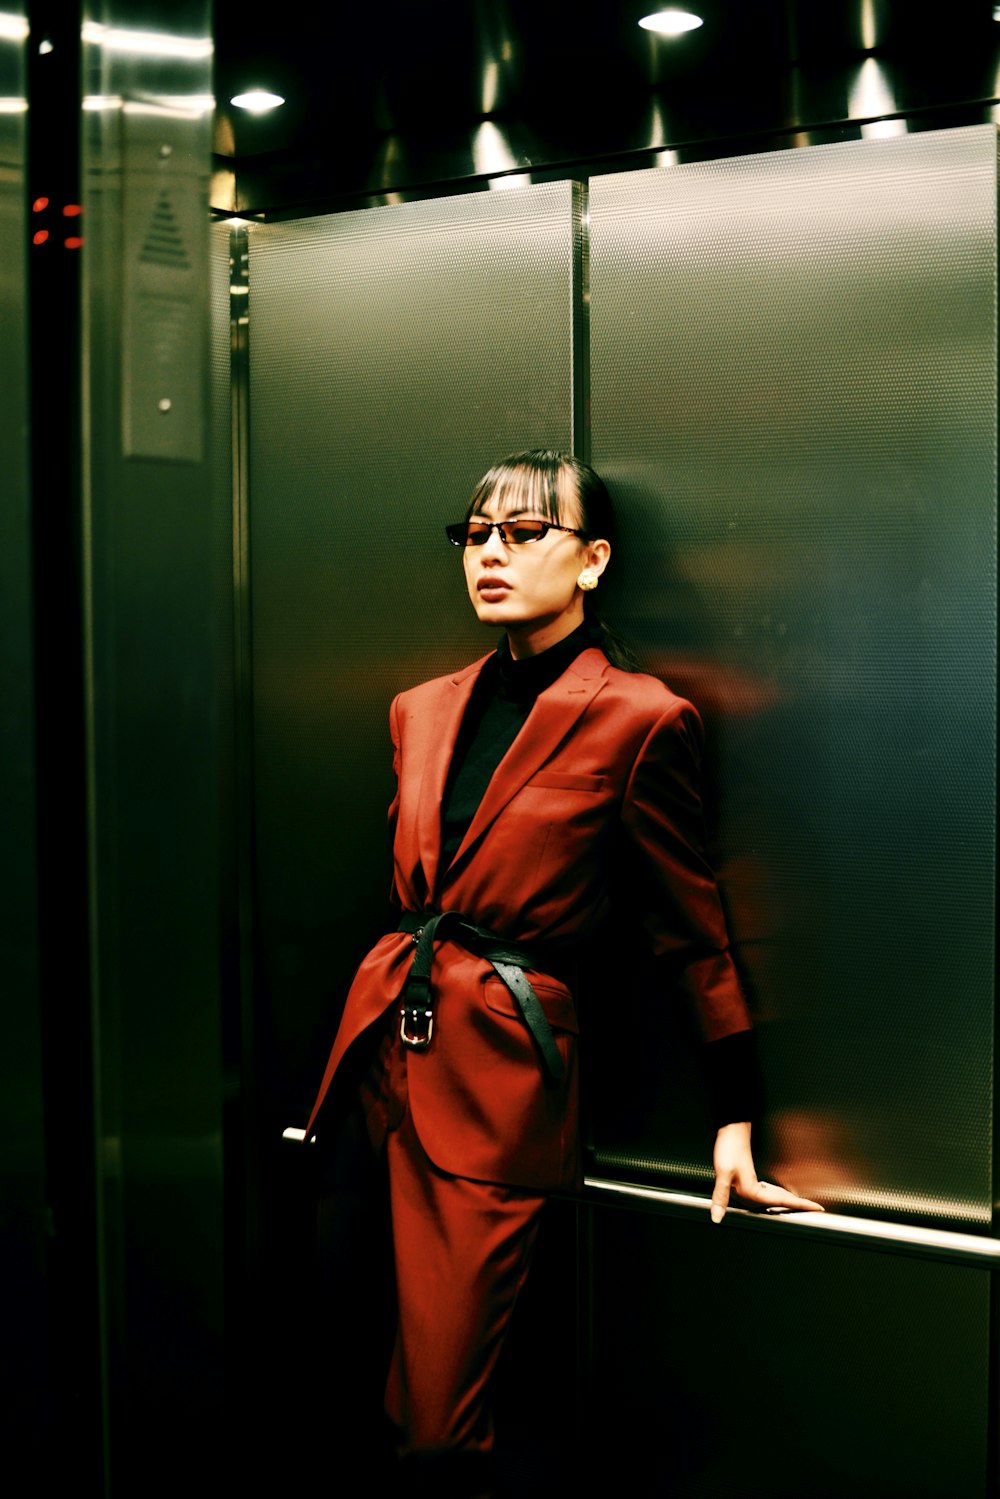 エレベーターに乗った赤いブレザーの女性